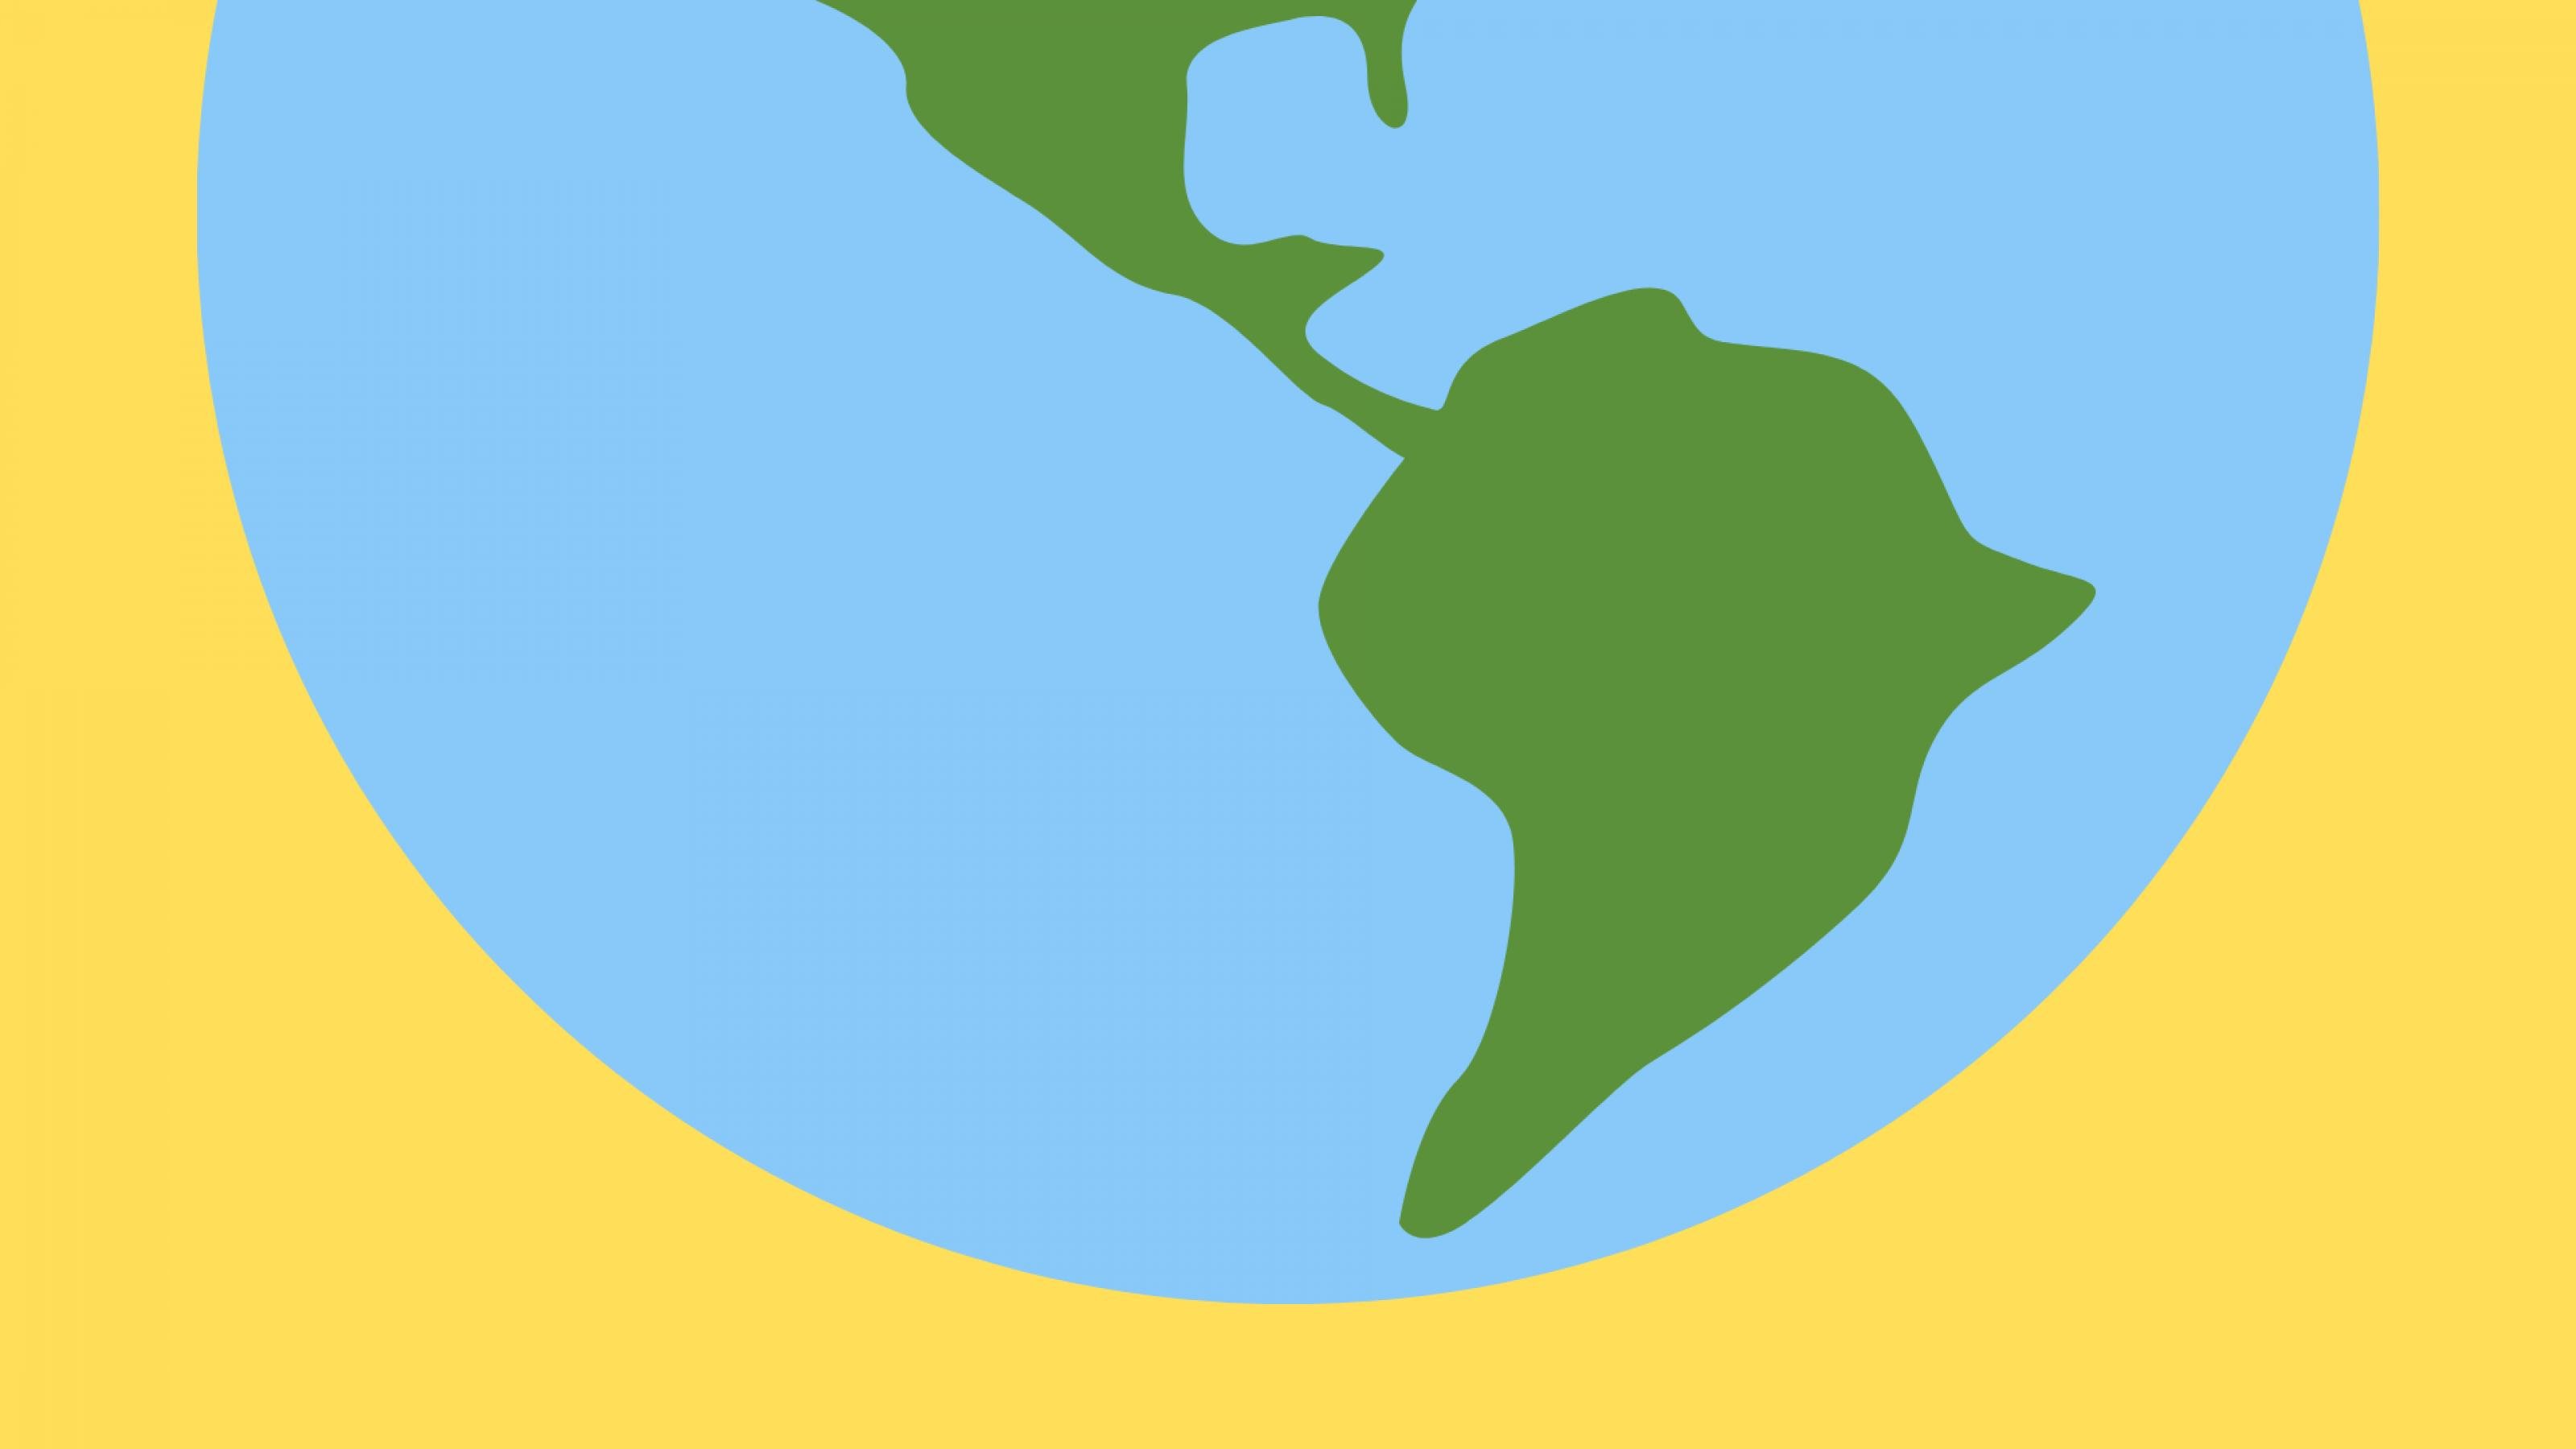 Grafik mit grünem Umriss des südamerikanischen Halbkontinents auf blauem Hintergrund.